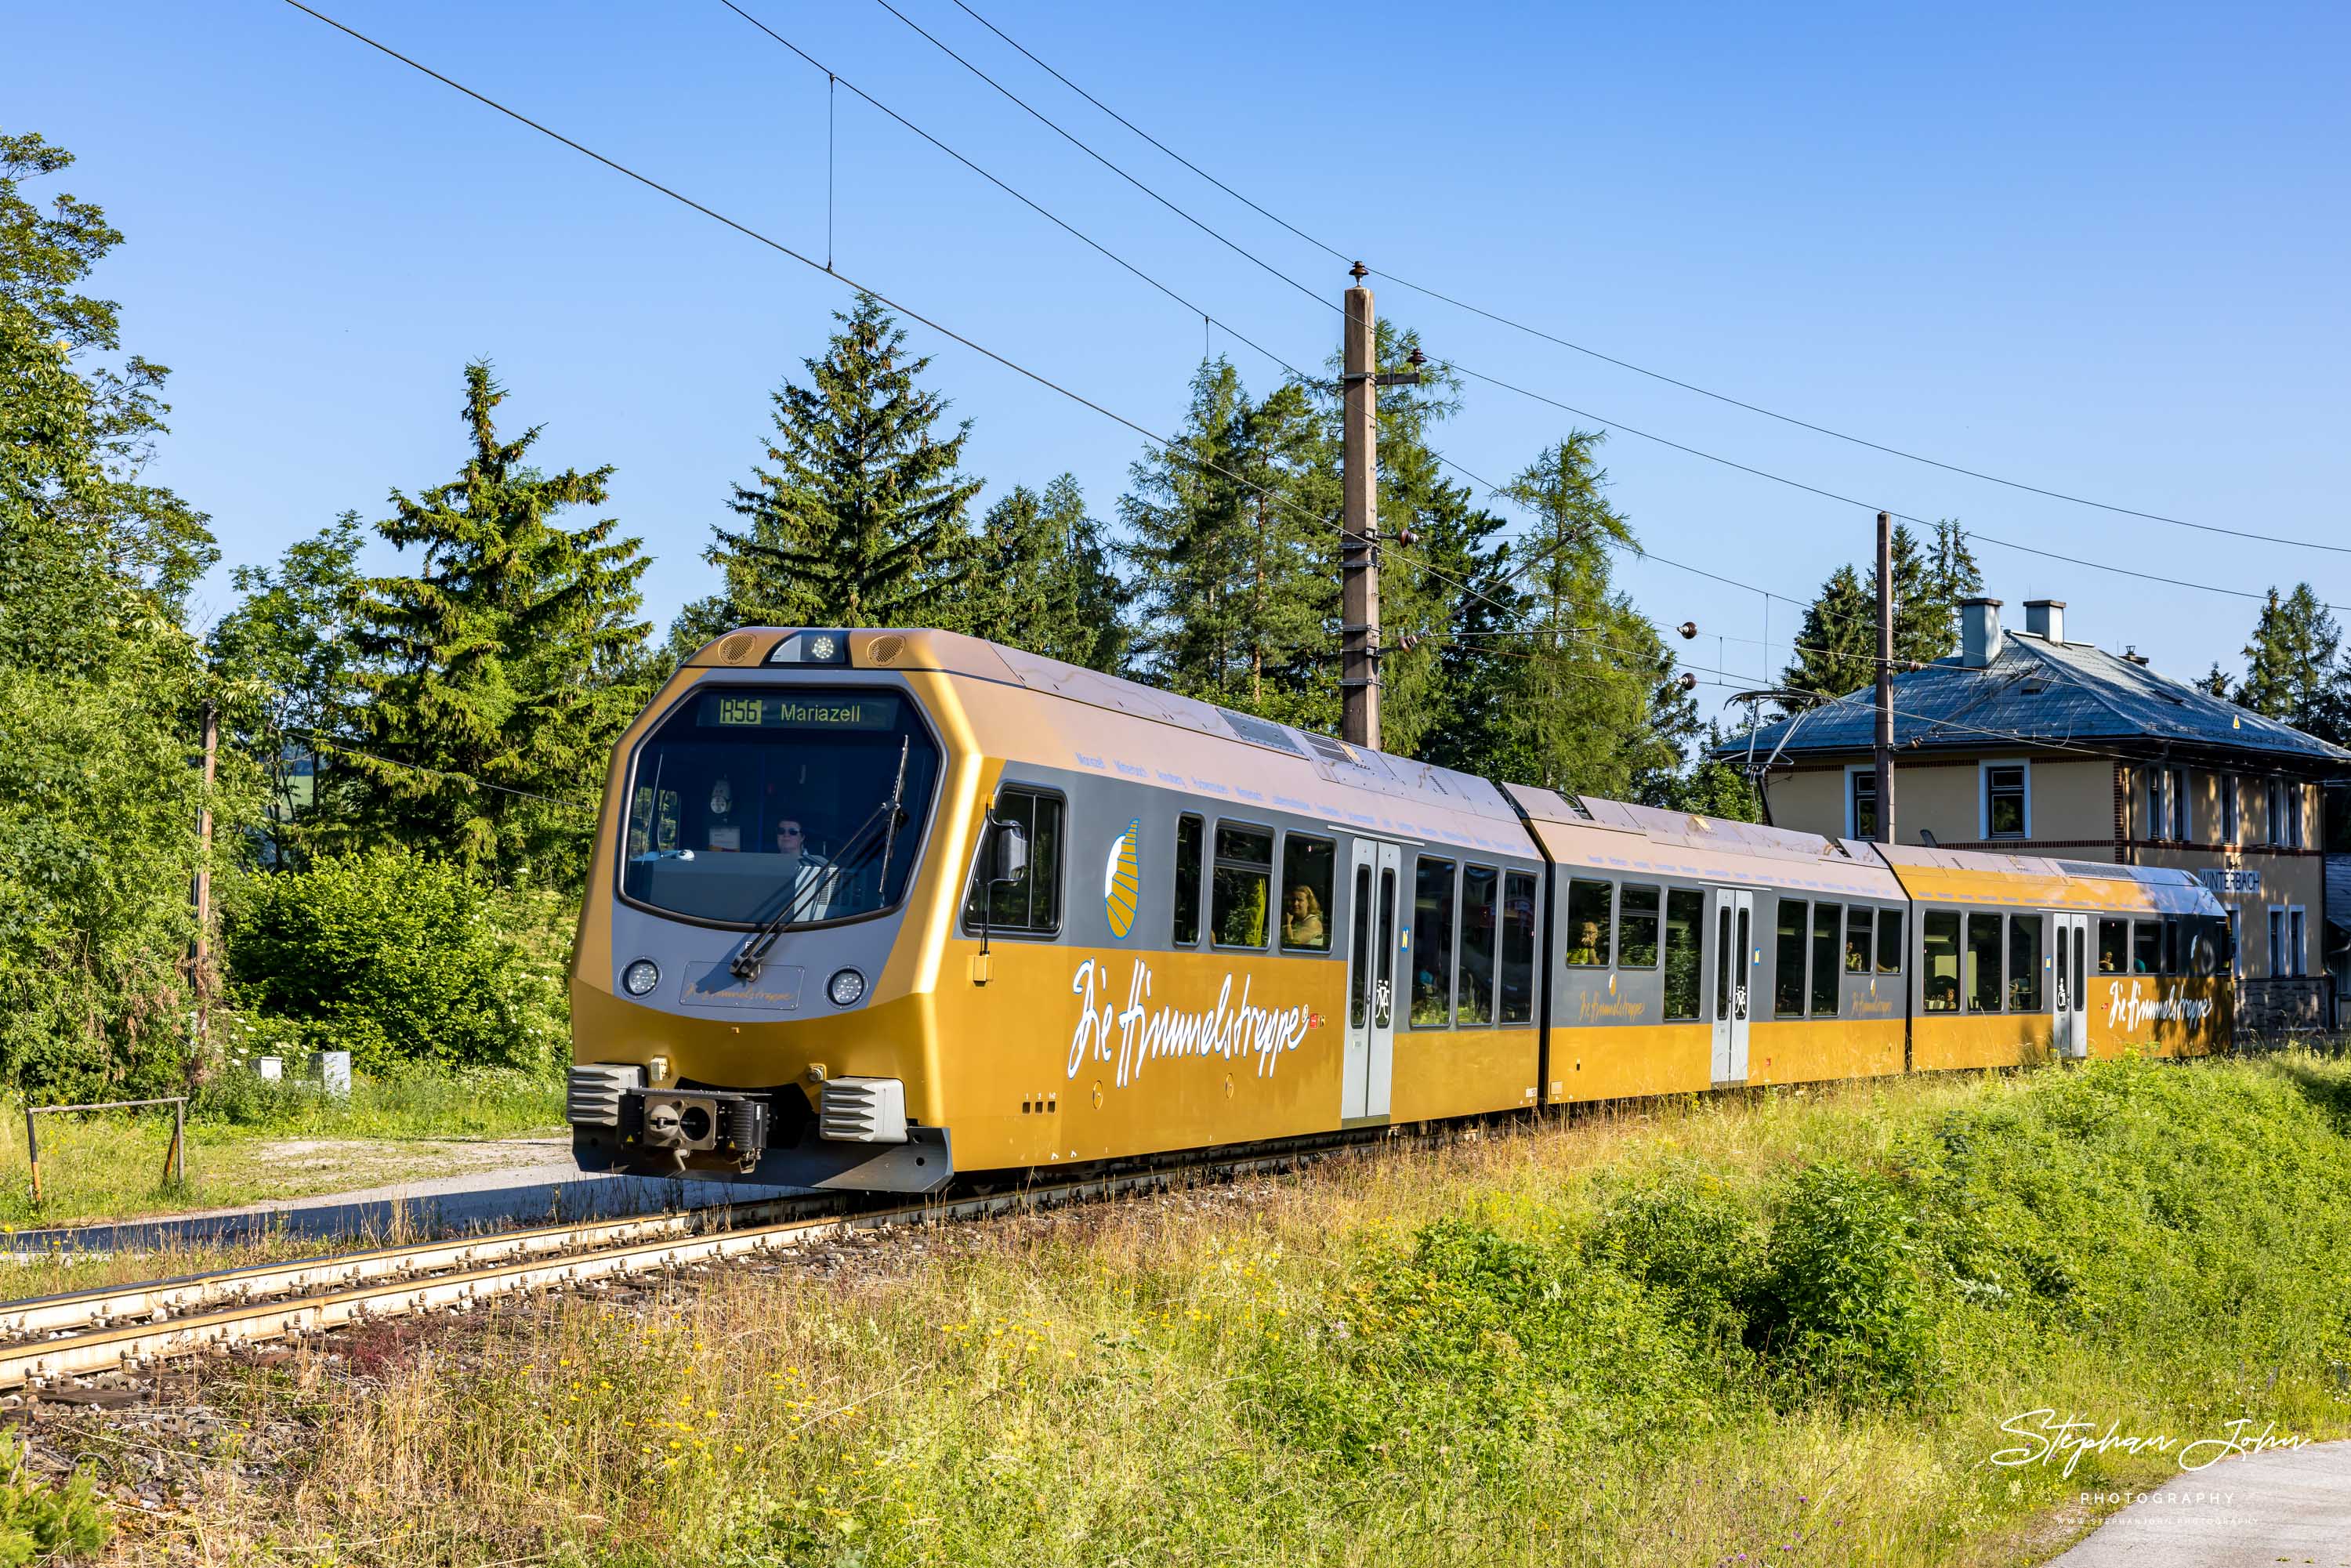 Ausfahrt der Himmelstreppe 6803 aus dem Bahnhof Winterbach nach Mariazell. Die Triebwagen wurden von Stadler Rail gebaut.